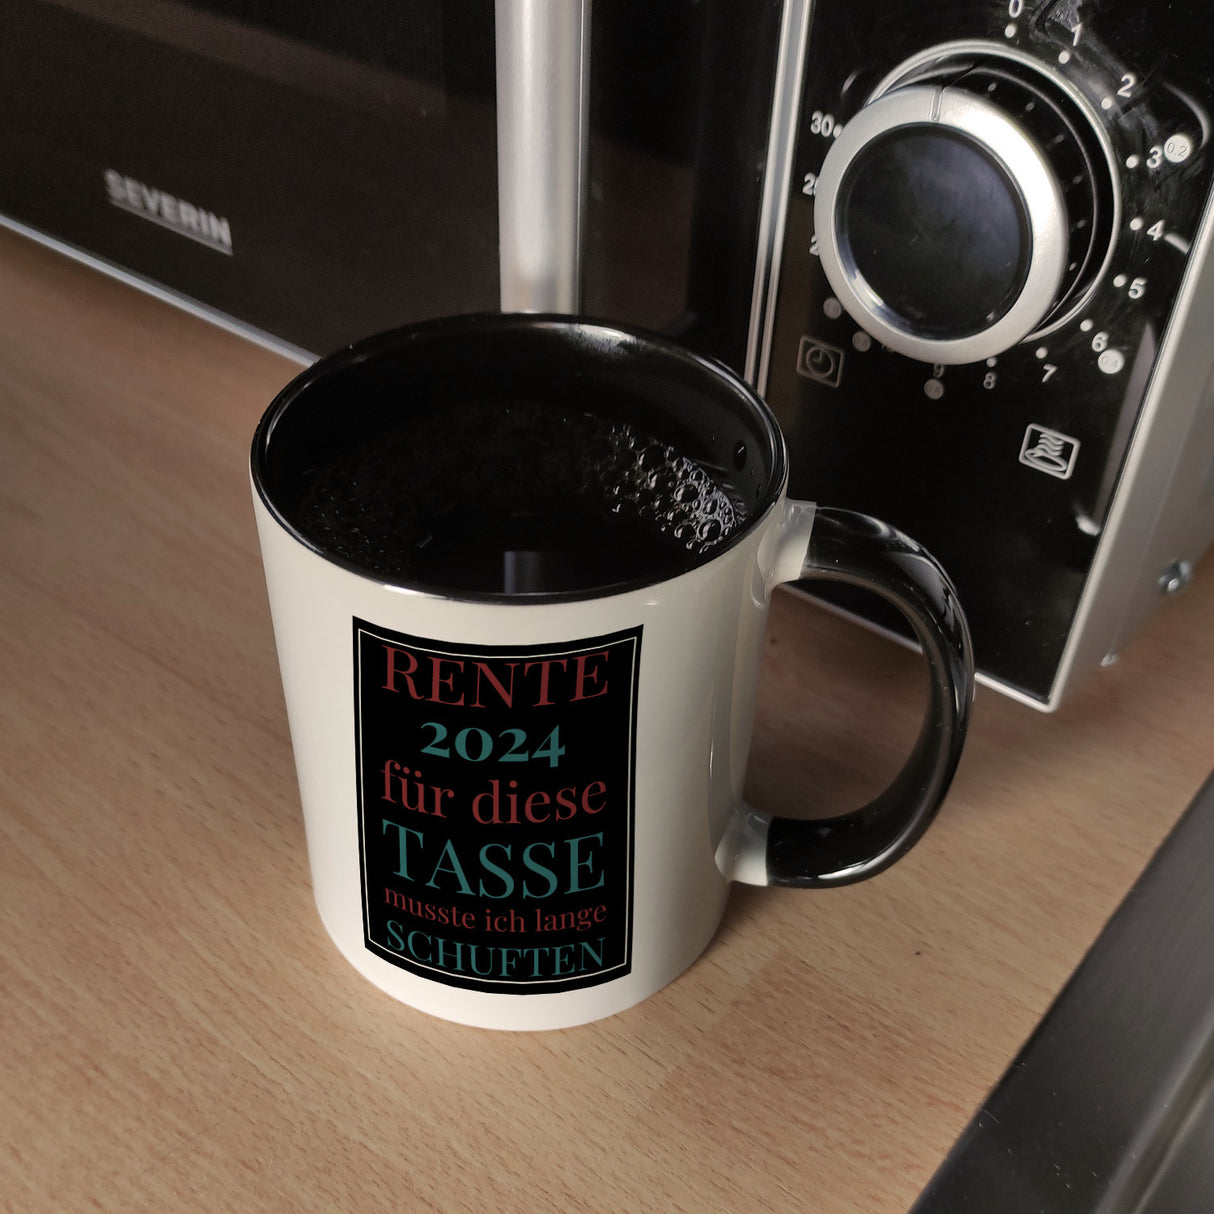 Rente 2024 Kaffeebecher eine bunte Tasse für Rentner